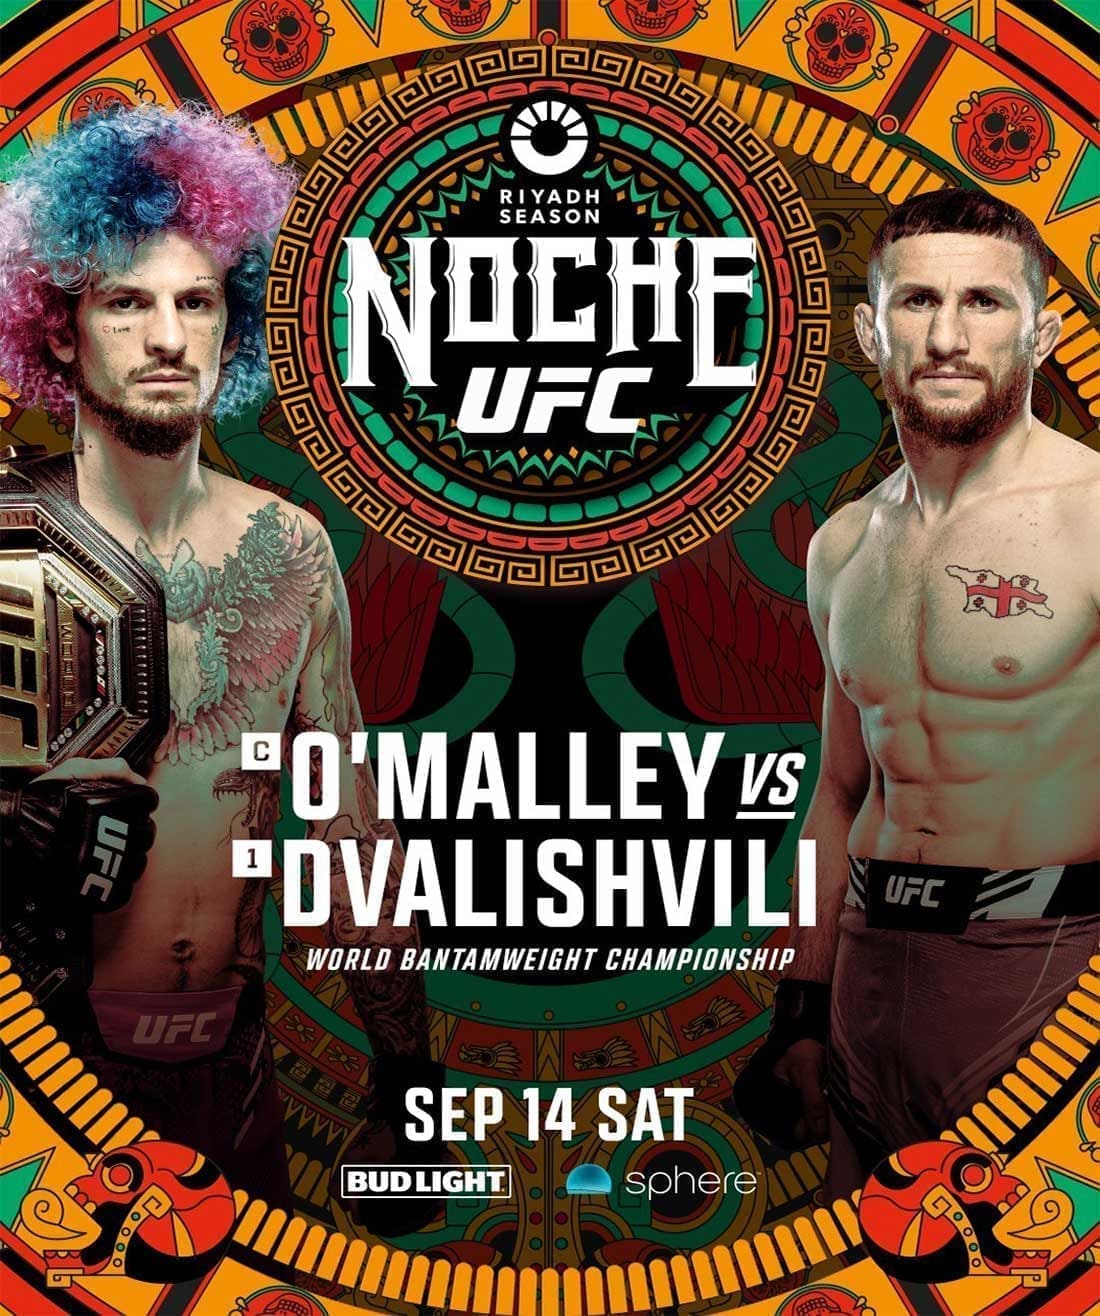 UFC 306 Noche: О’Мэлли - Двалишвили дата проведения, кард, участники и результаты